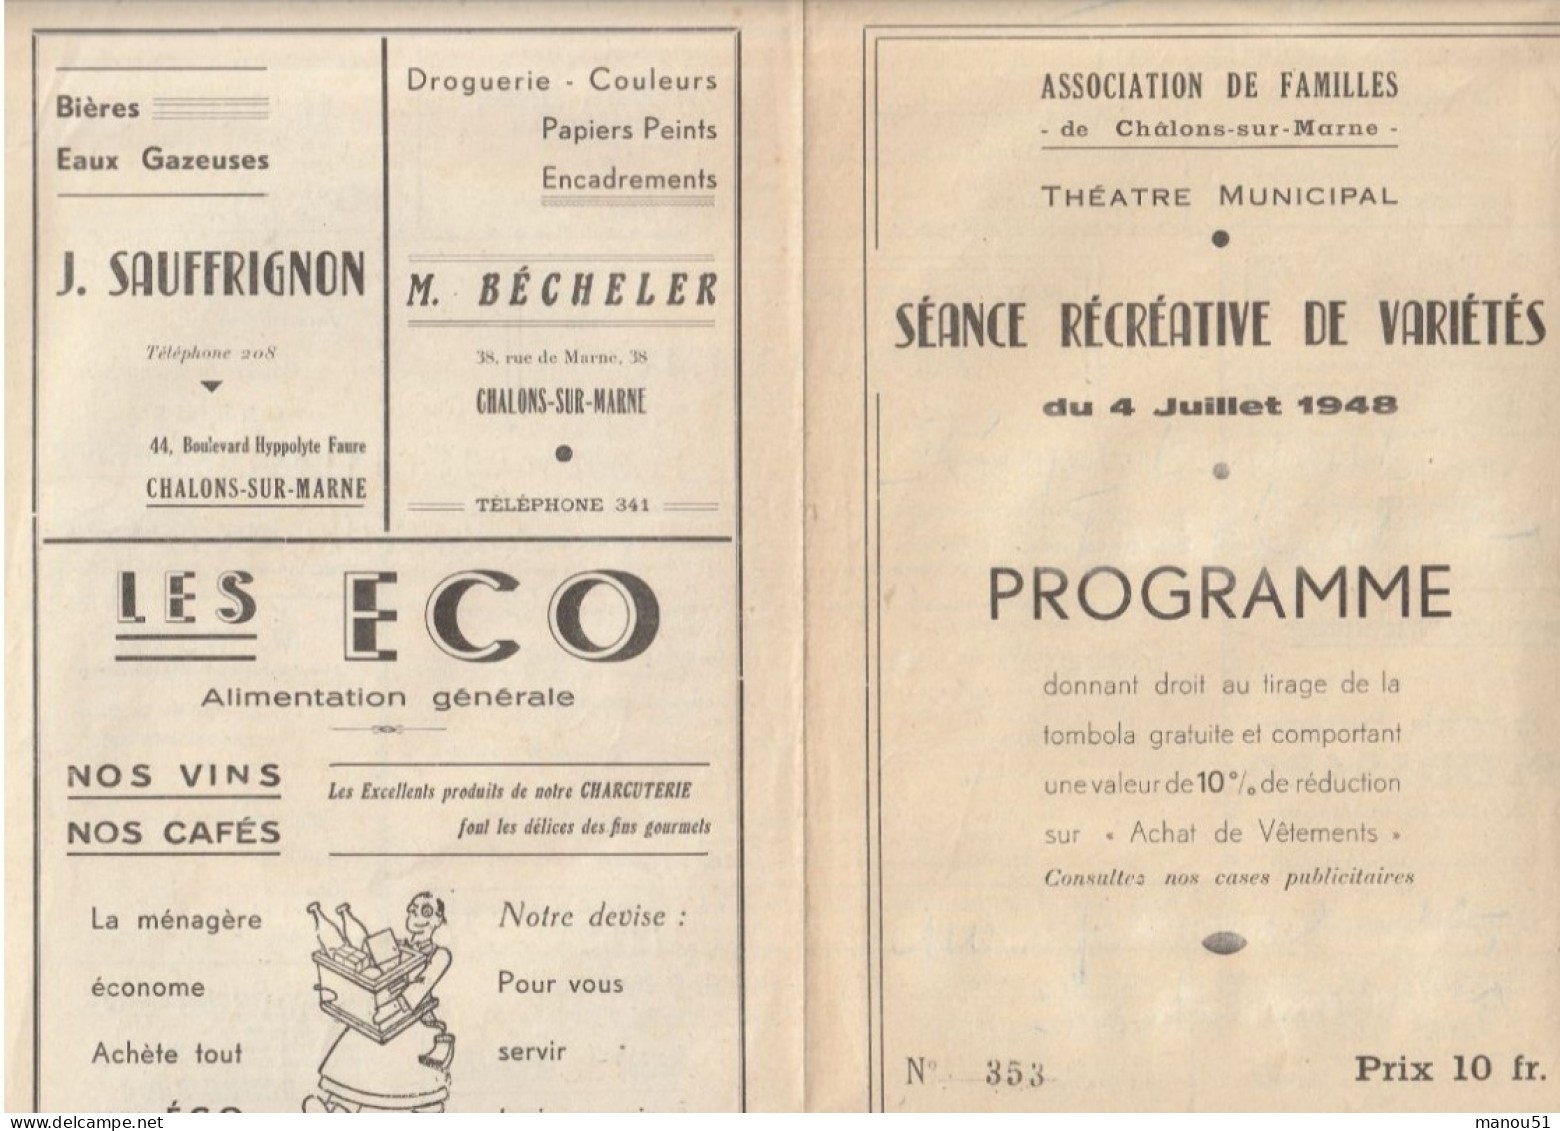 CHALONS Sur MARNE - Théâtre Municipal - Programme Soirée Récréative De Variétés 4 Juillet 1948 - Programmes